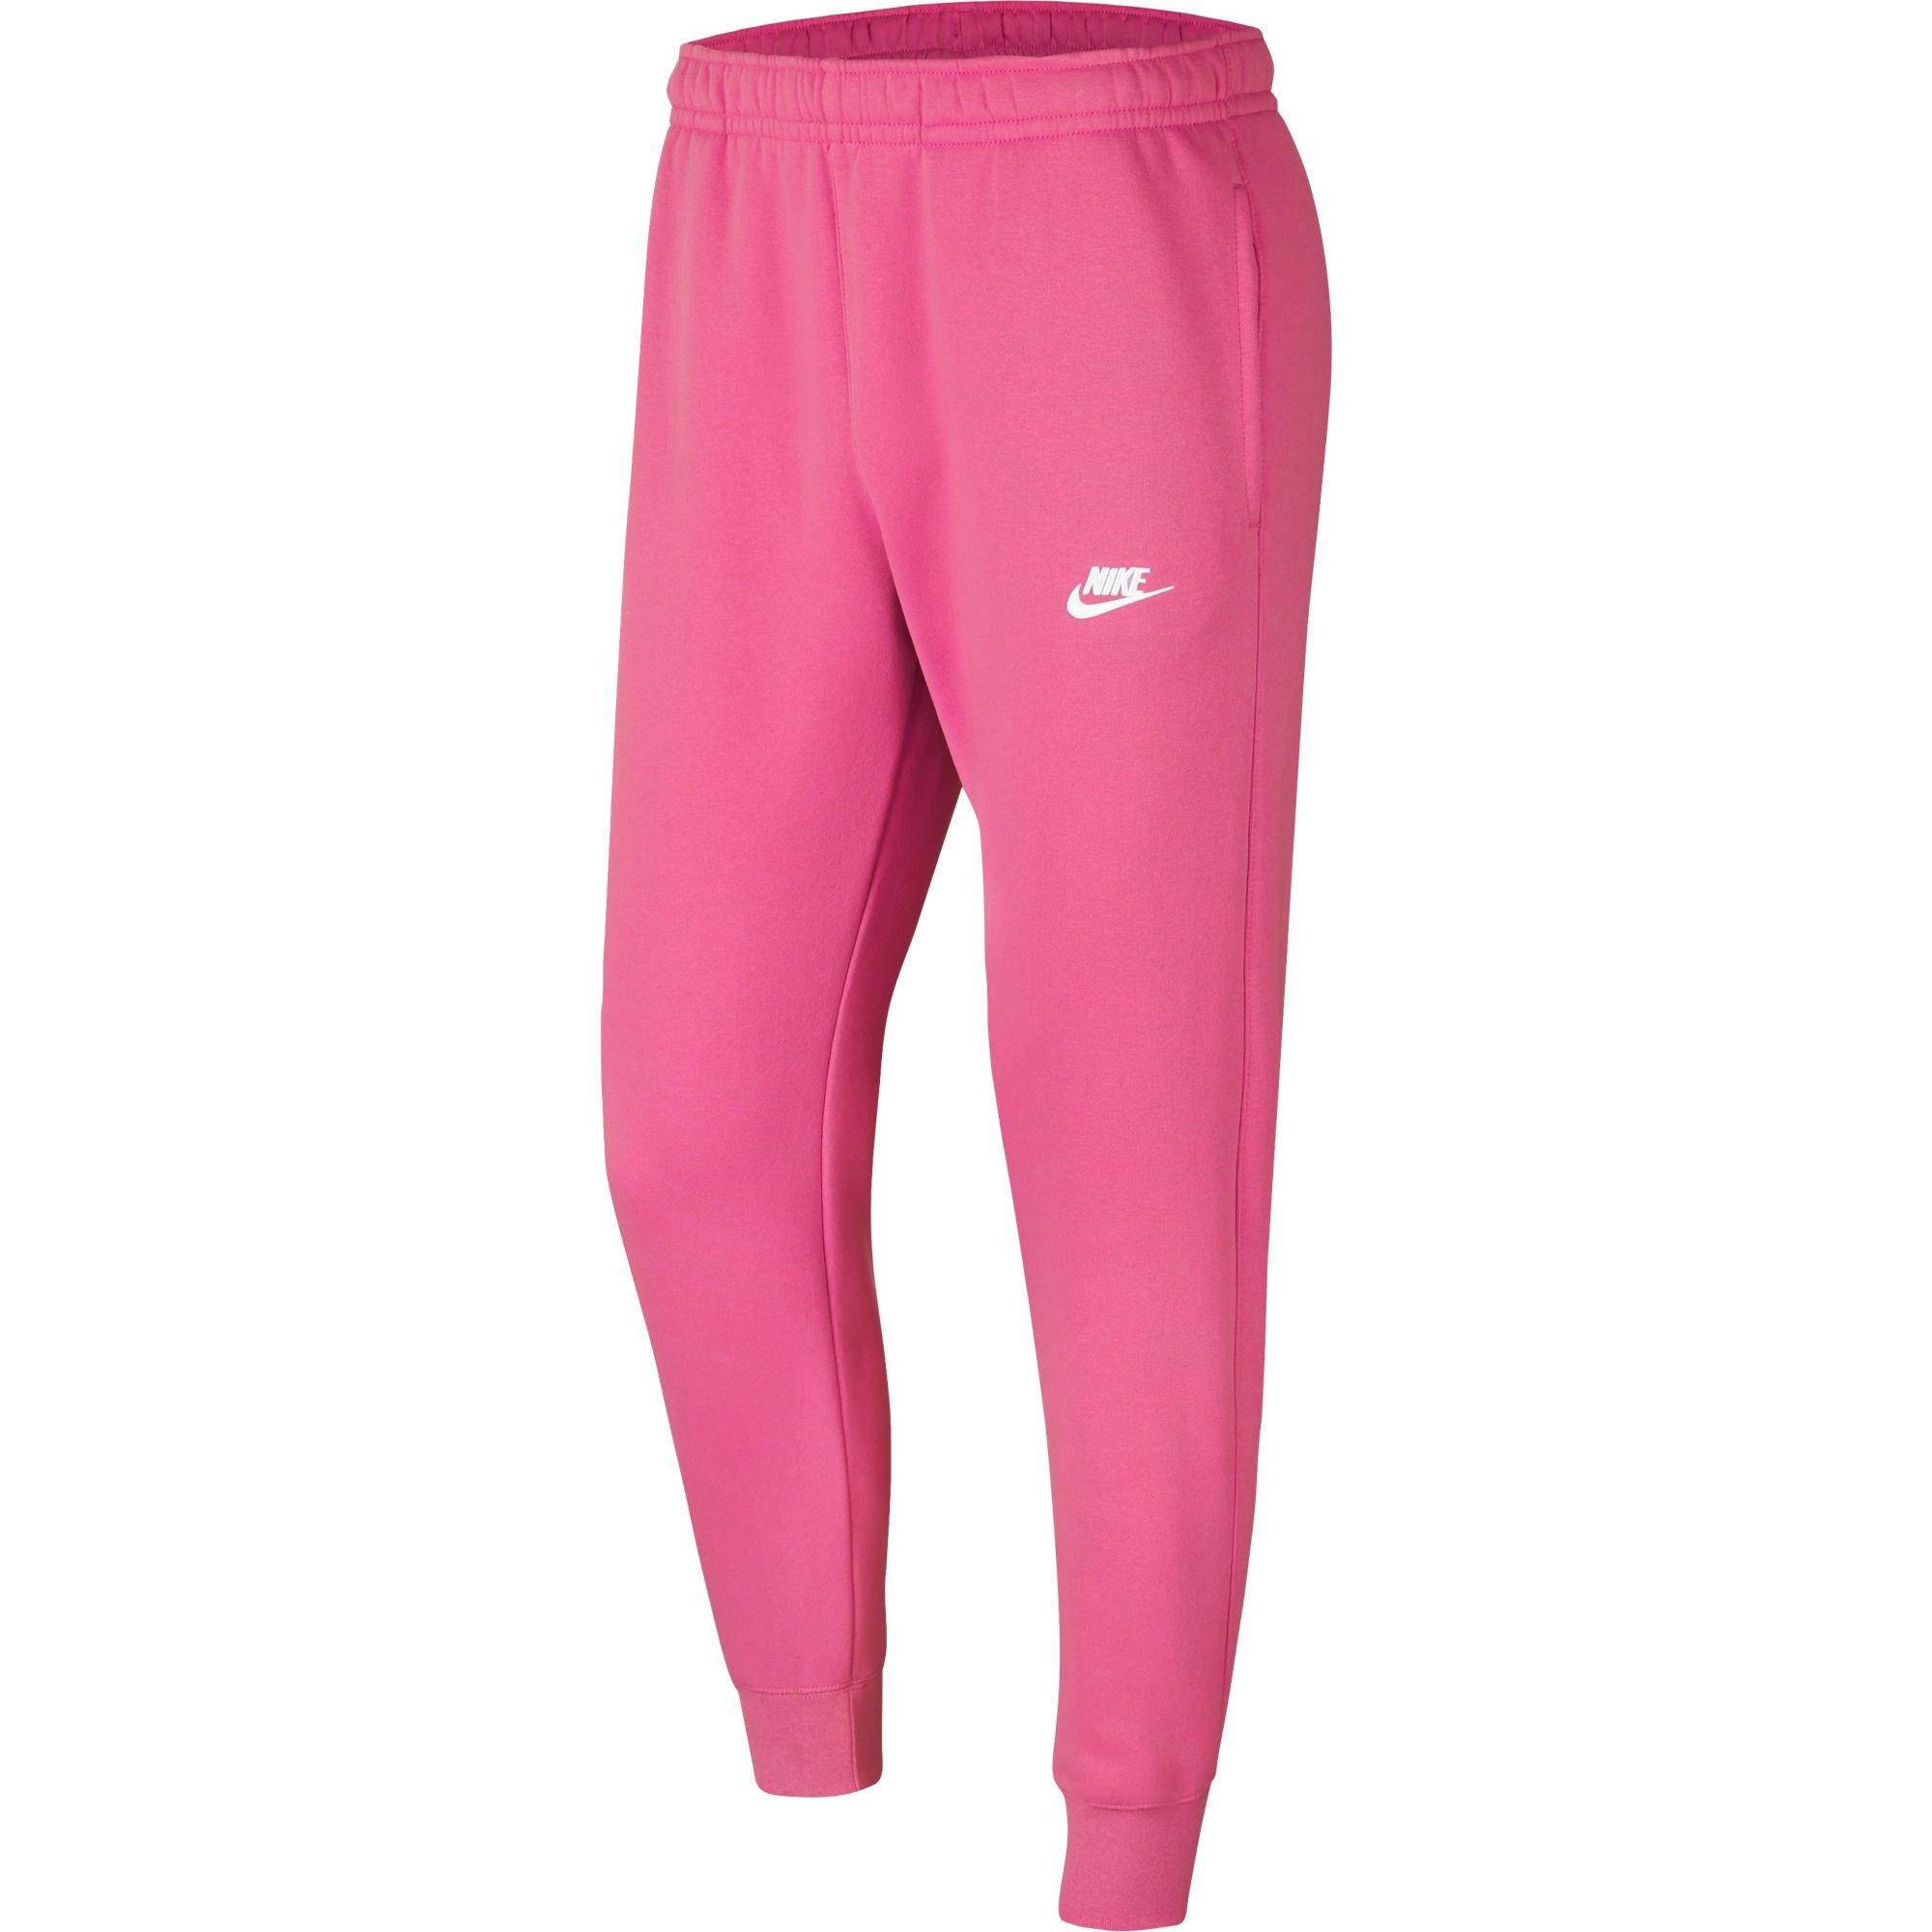 nike pink jogging suit